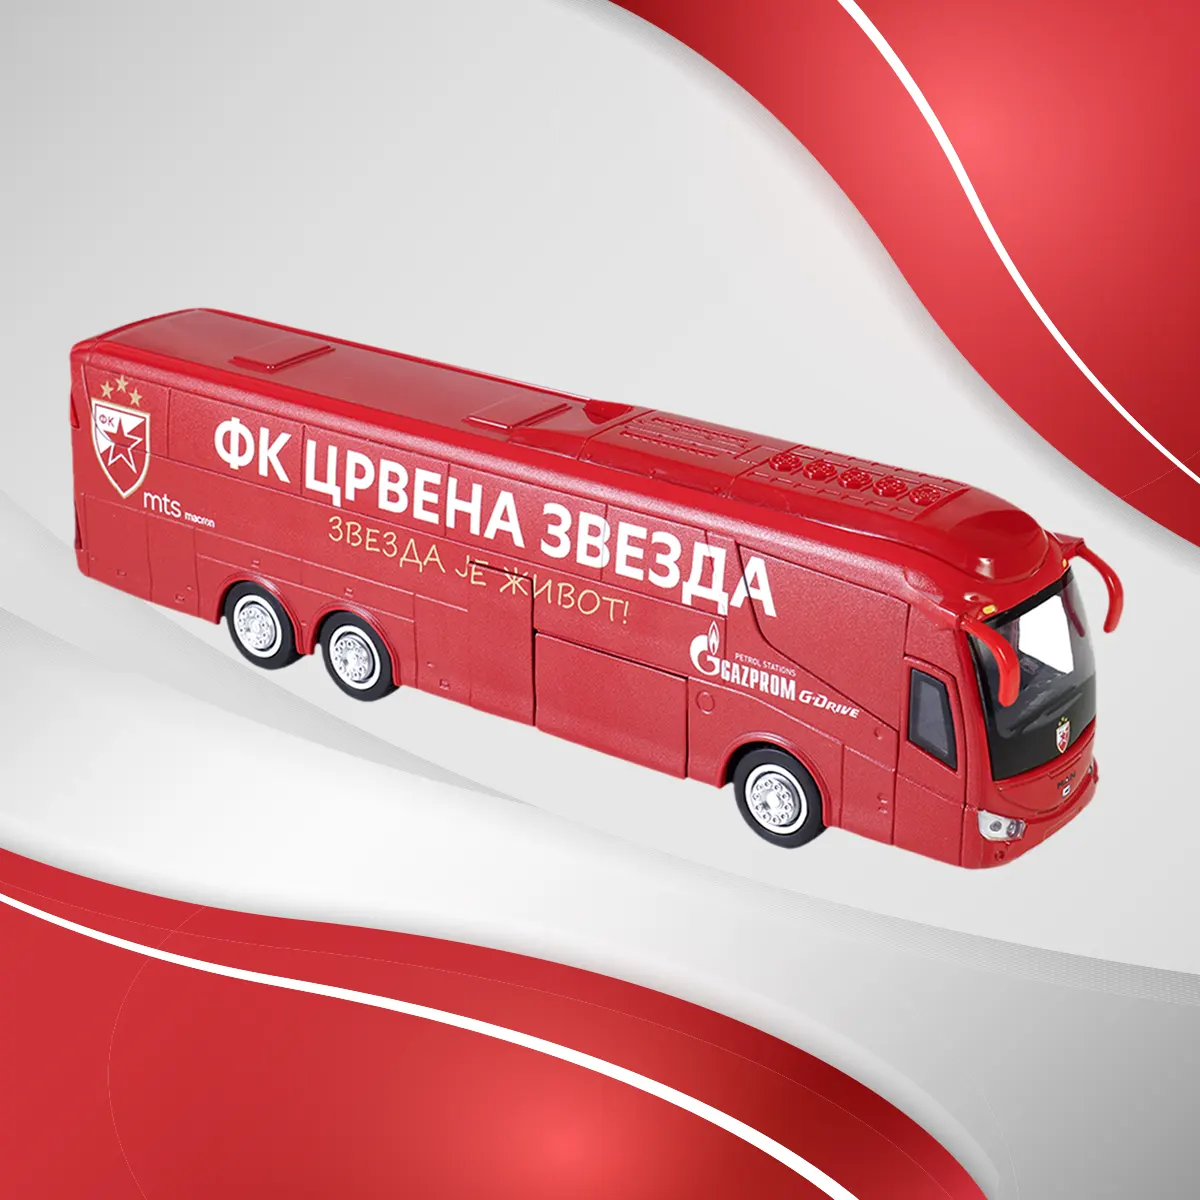 Crvena-Zvezda-Bus-copy-1